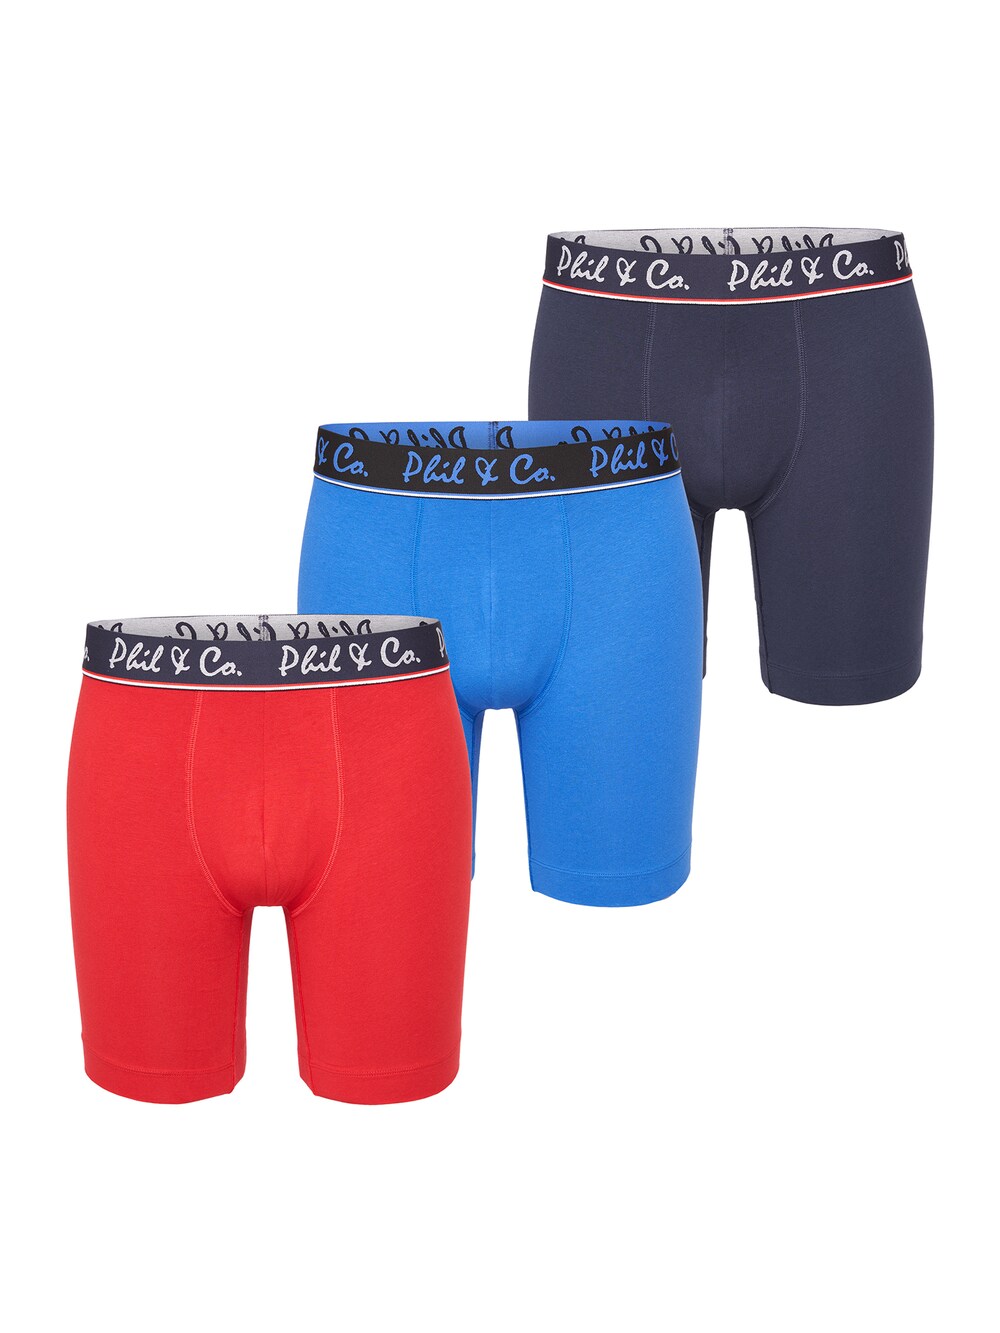 Трусы боксеры Phil & Co. Berlin Jersey Long Boxer, темно-синий/небесно-голубой/огненно-красный